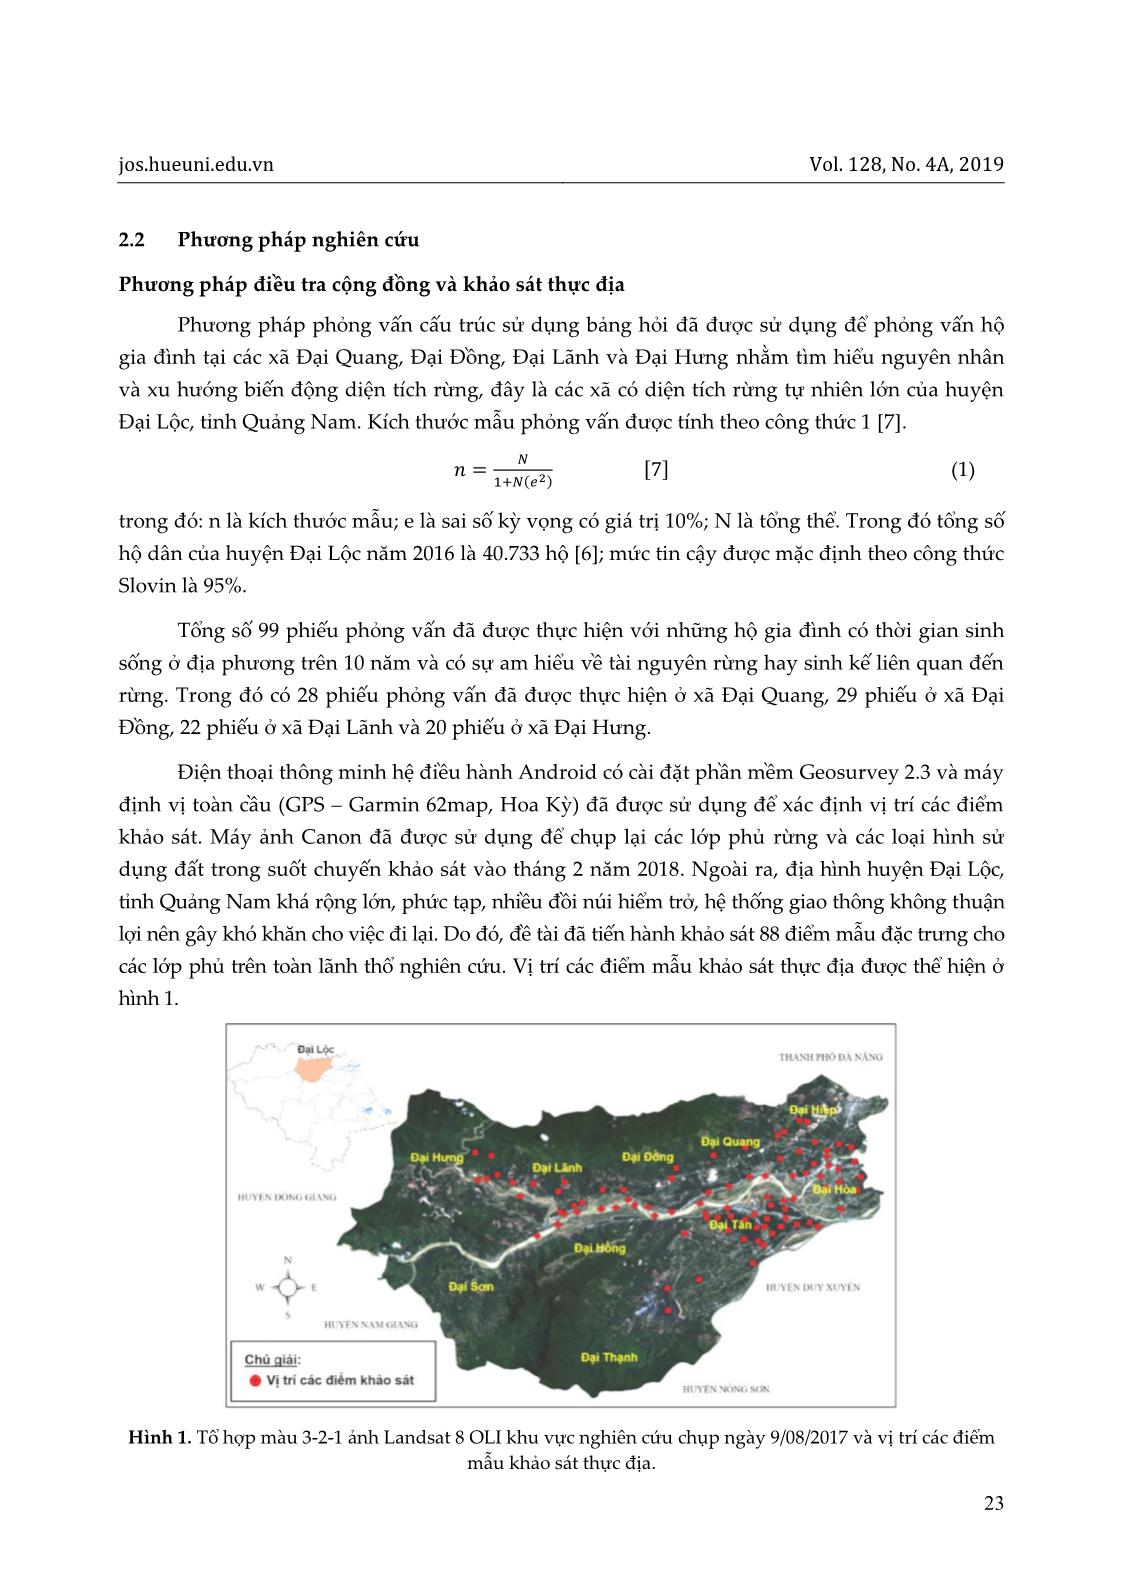 Ứng dụng viễn thám và GIS trong đánh giá biến động diện tích rừng huyện Đại Lộc, tỉnh Quảng Nam giai đoạn 1988-2017 trang 3